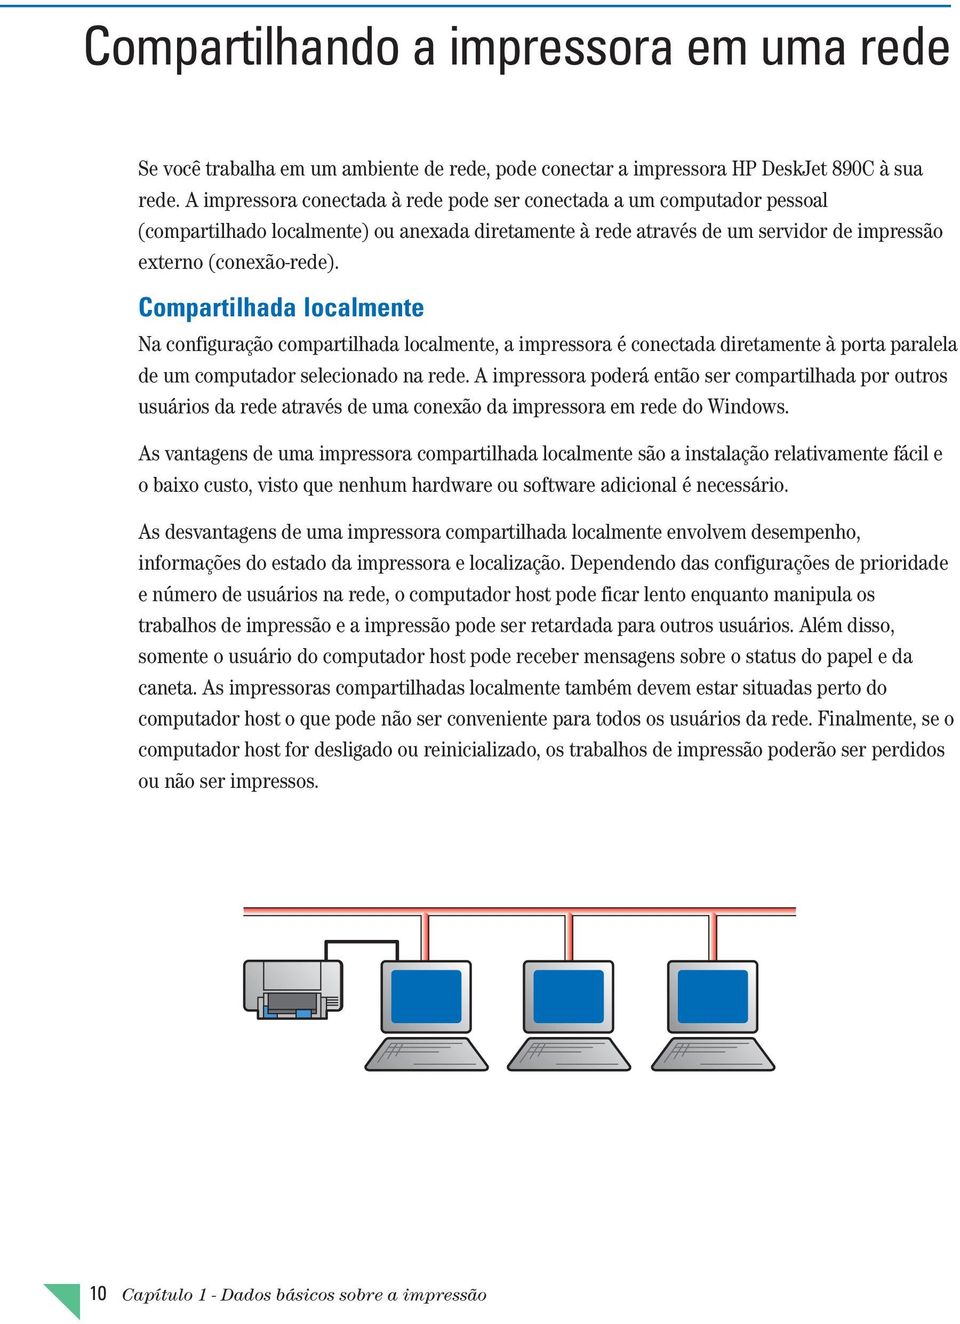 Compartilhada localmente Na configuração compartilhada localmente, a impressora é conectada diretamente à porta paralela de um computador selecionado na rede.